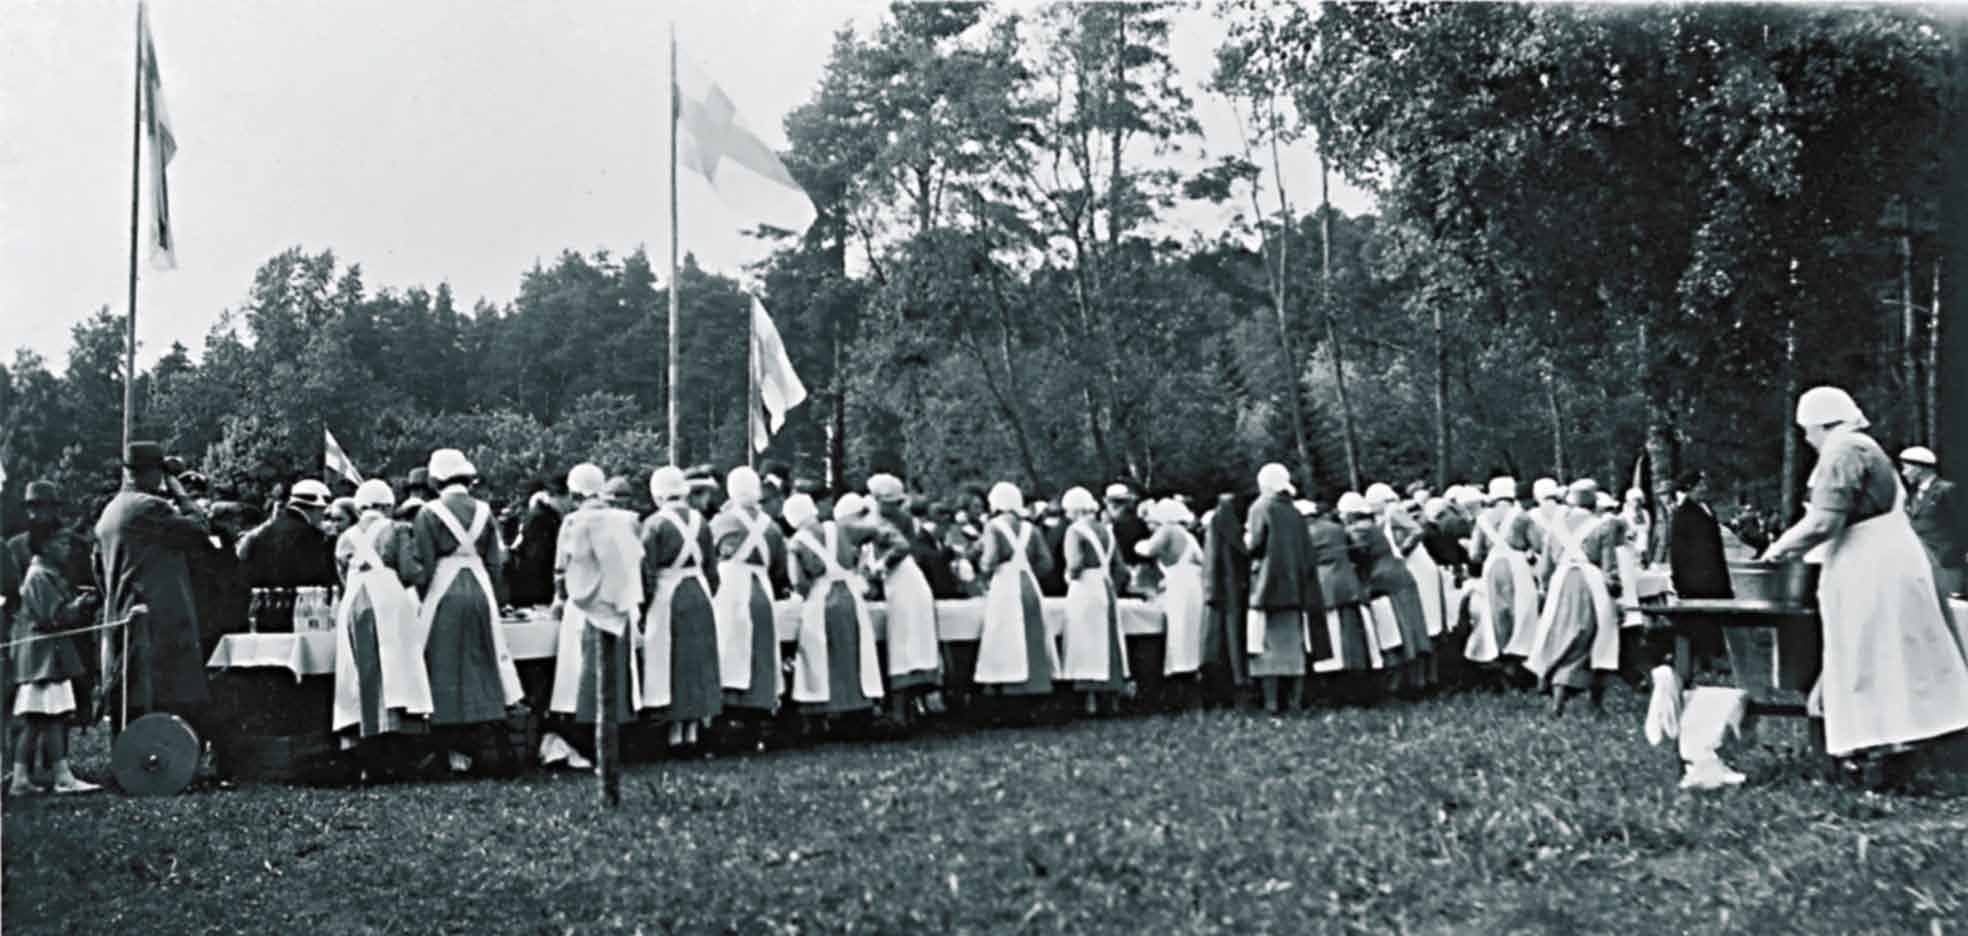 Perintö yli sukupolvien Lotta Svärd -järjestö lakkautettiin marraskuussa 1944 jatkosodan rauhansopimuksen ehtojen mukaisesti.